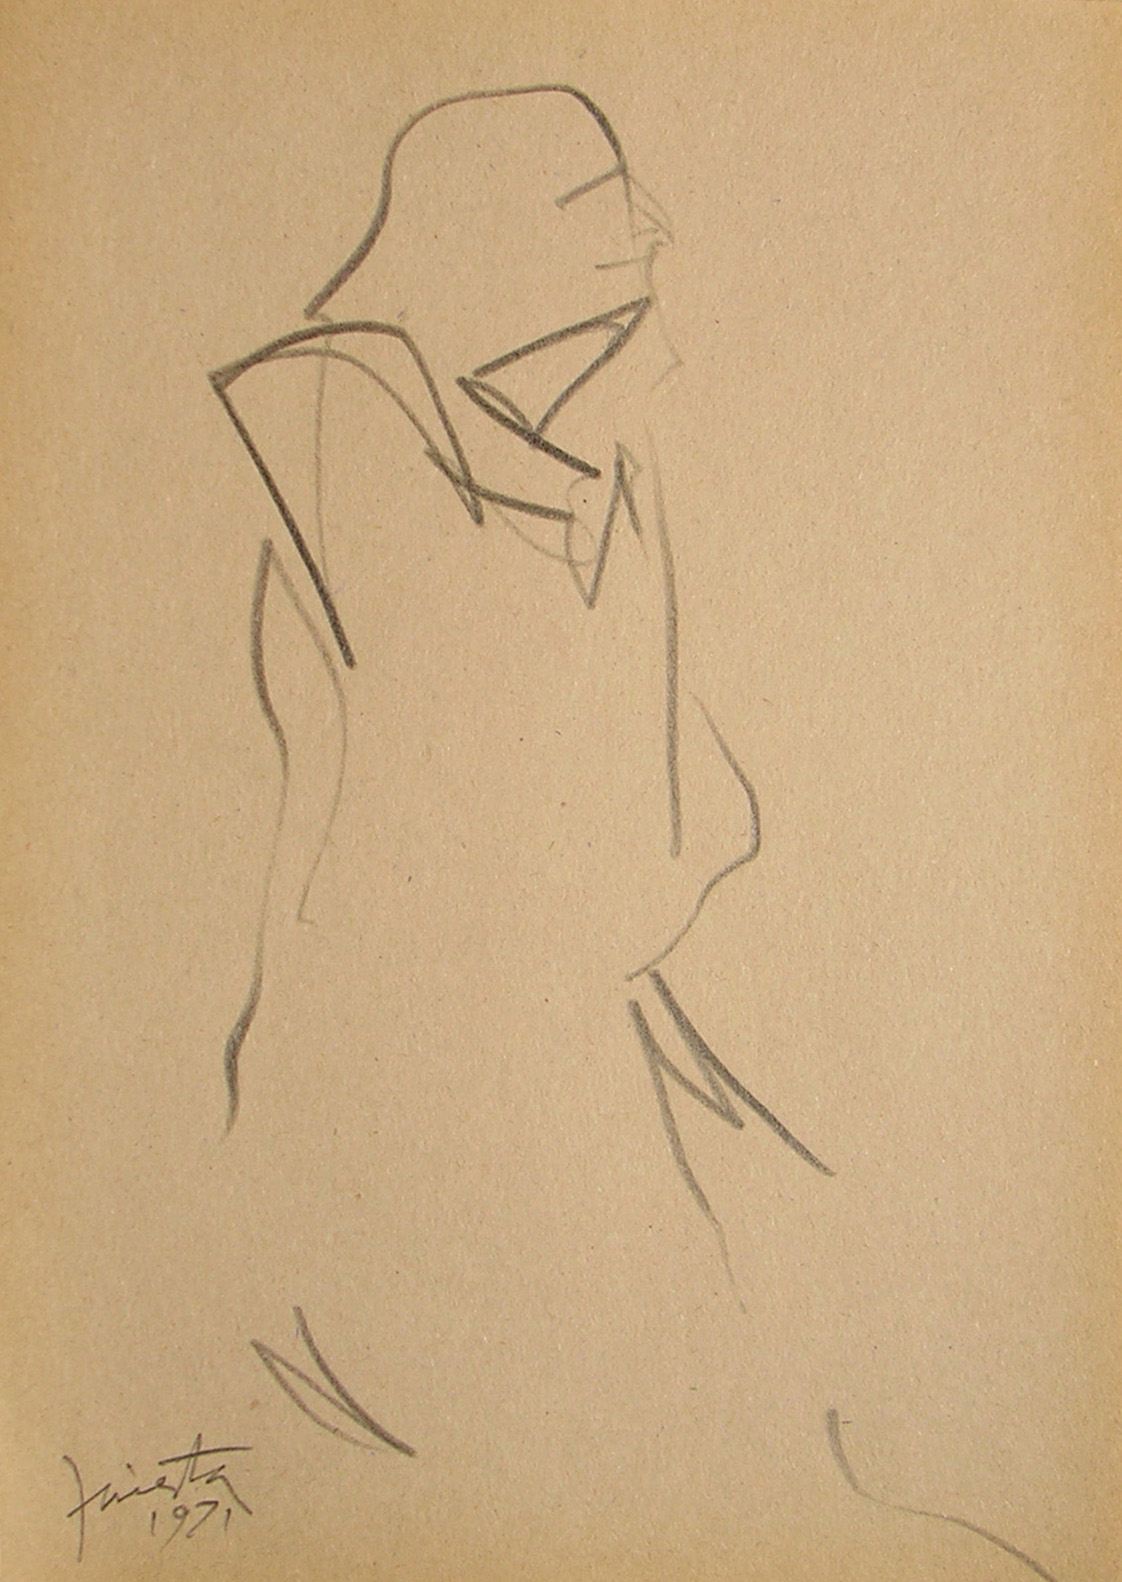 Figura humana, carbonilla sobre papel, 19 cm x 13 cm, 1971